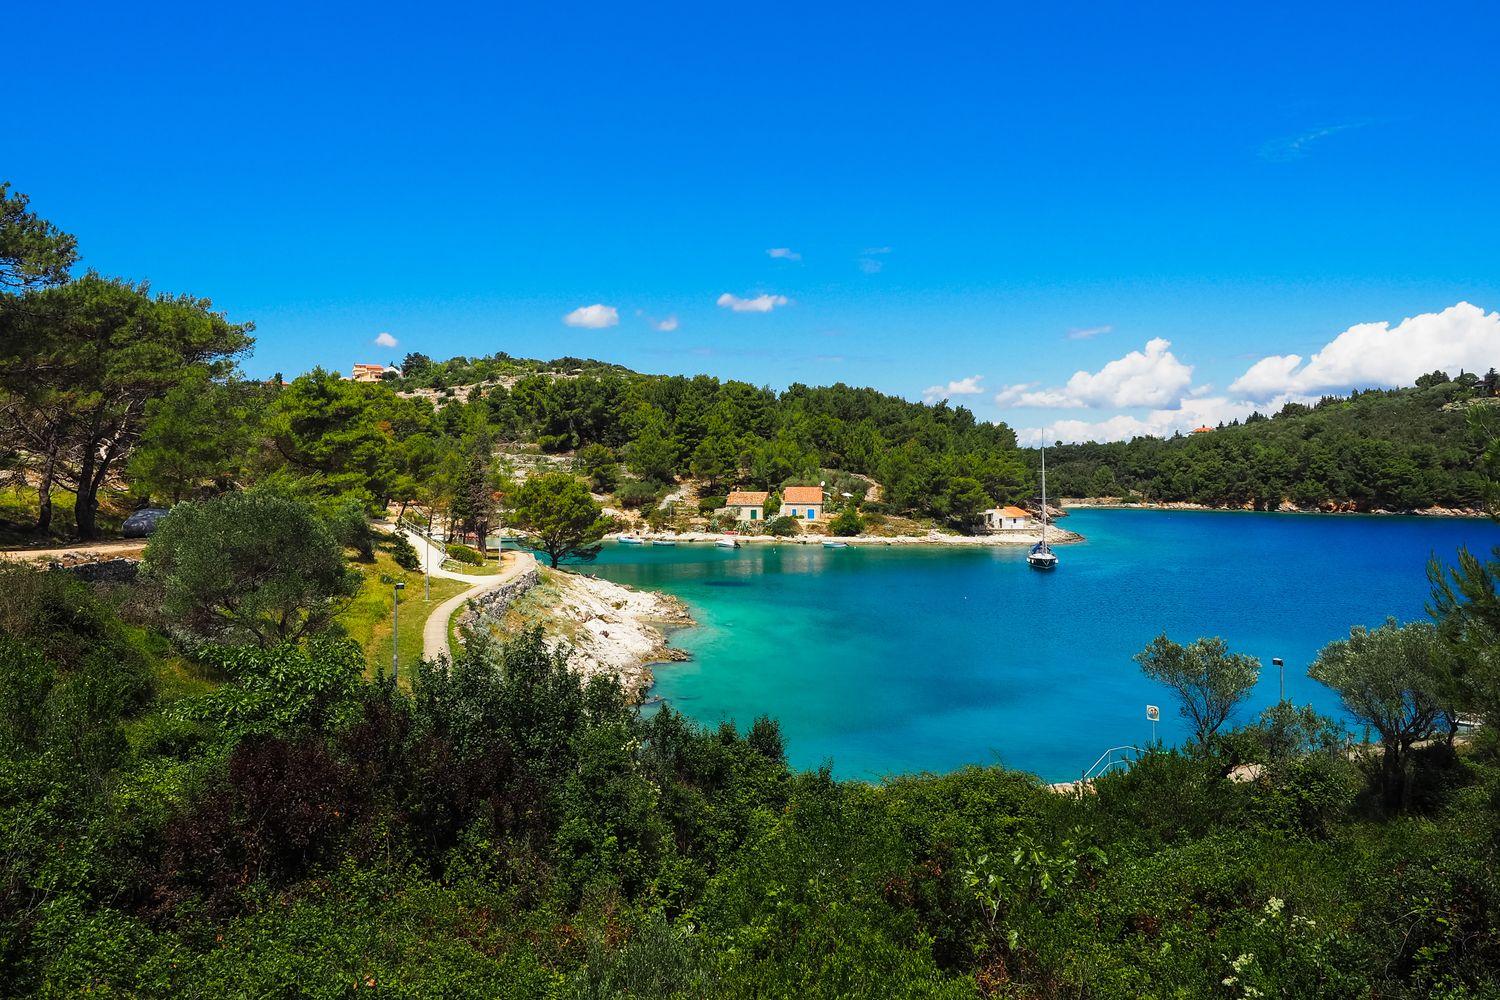 Bucht vor Losinj, Kroatien mit strahlend blauen Meer, umgeben von sattem grün